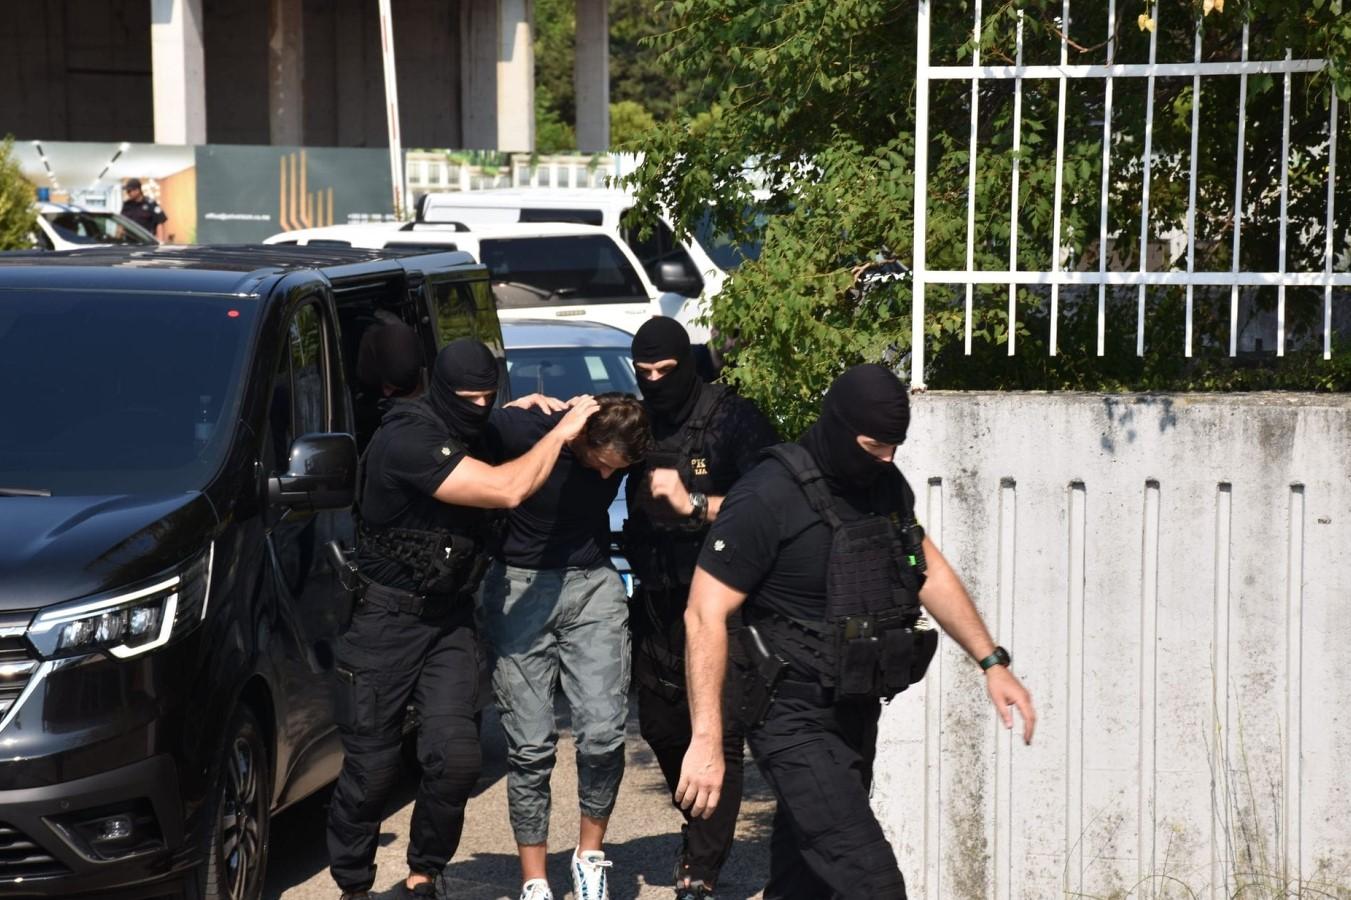 Crnogorska policija procesuirala 28 osoba zbog krijumčarenja 6,1 tone kokaina